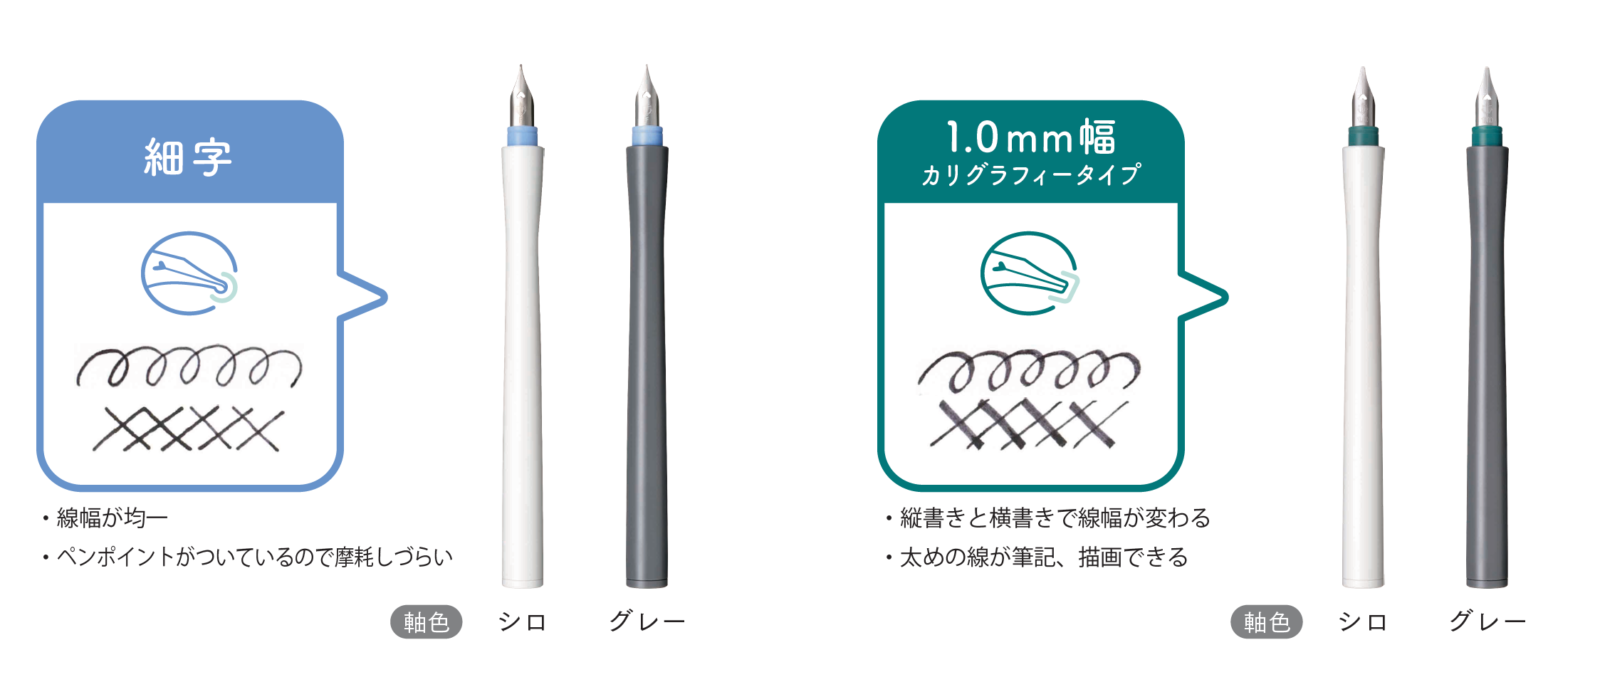 万年筆ペン先のつけペン Hocoro ホコロ 21年12月10日 金 より先行発売 セーラー万年筆